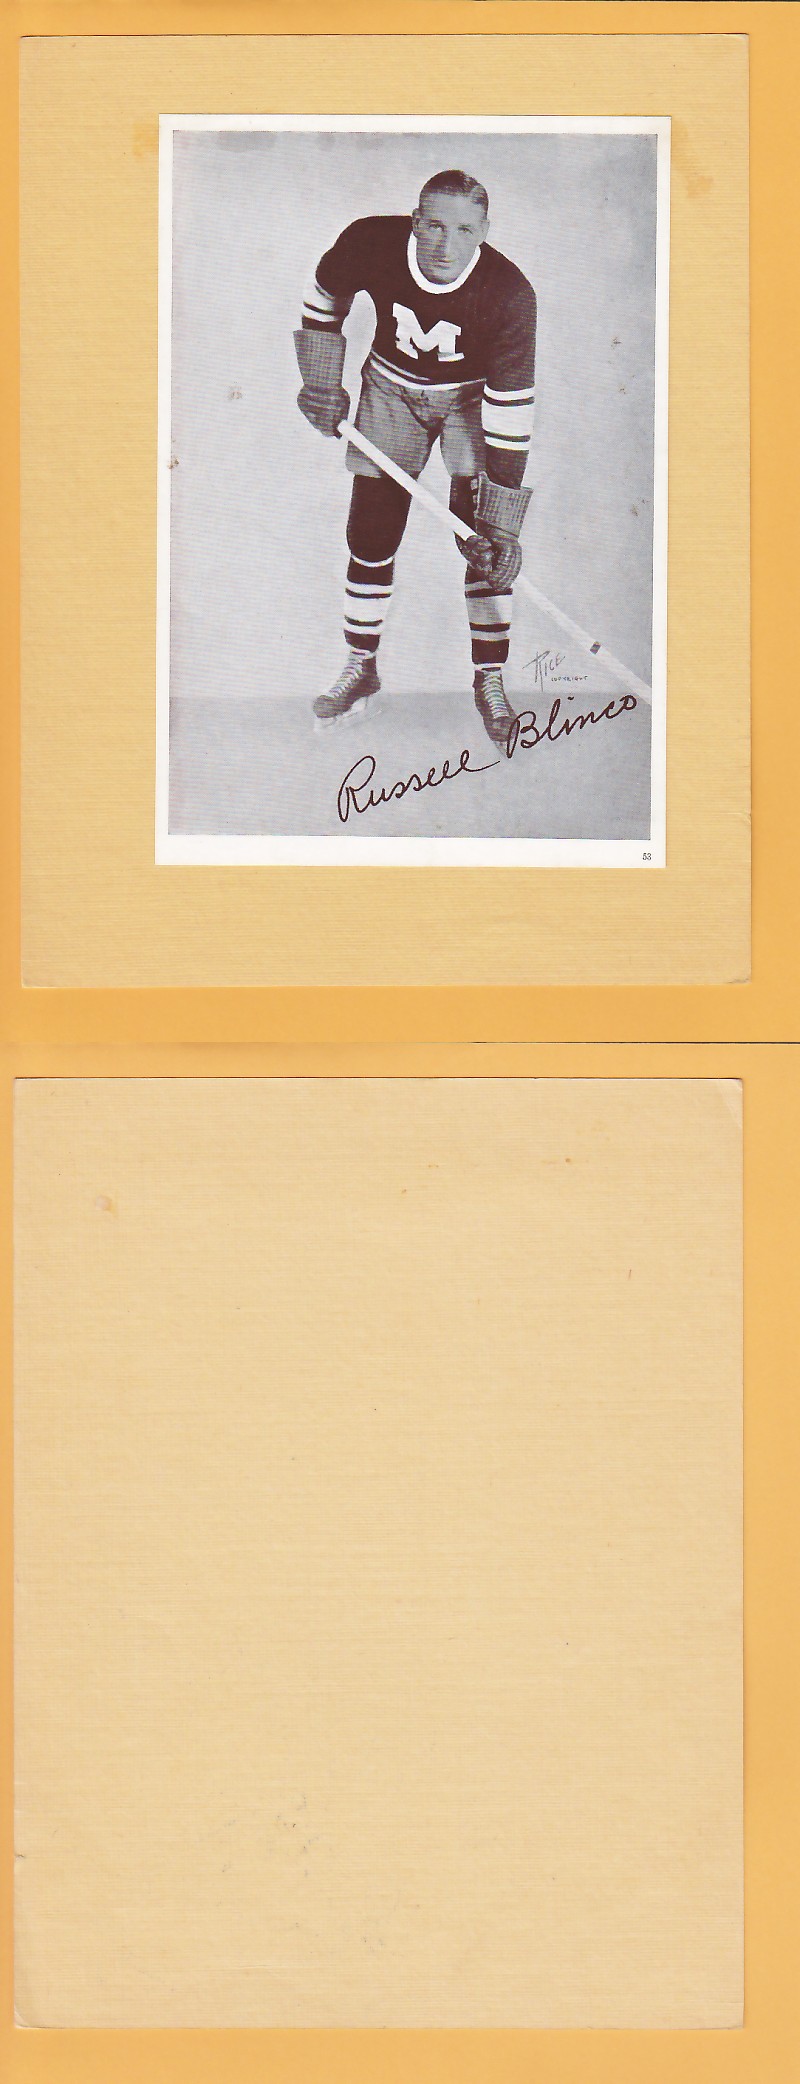 1935-40 CROWN BRAND PHOTO #53 R.BLINCO photo